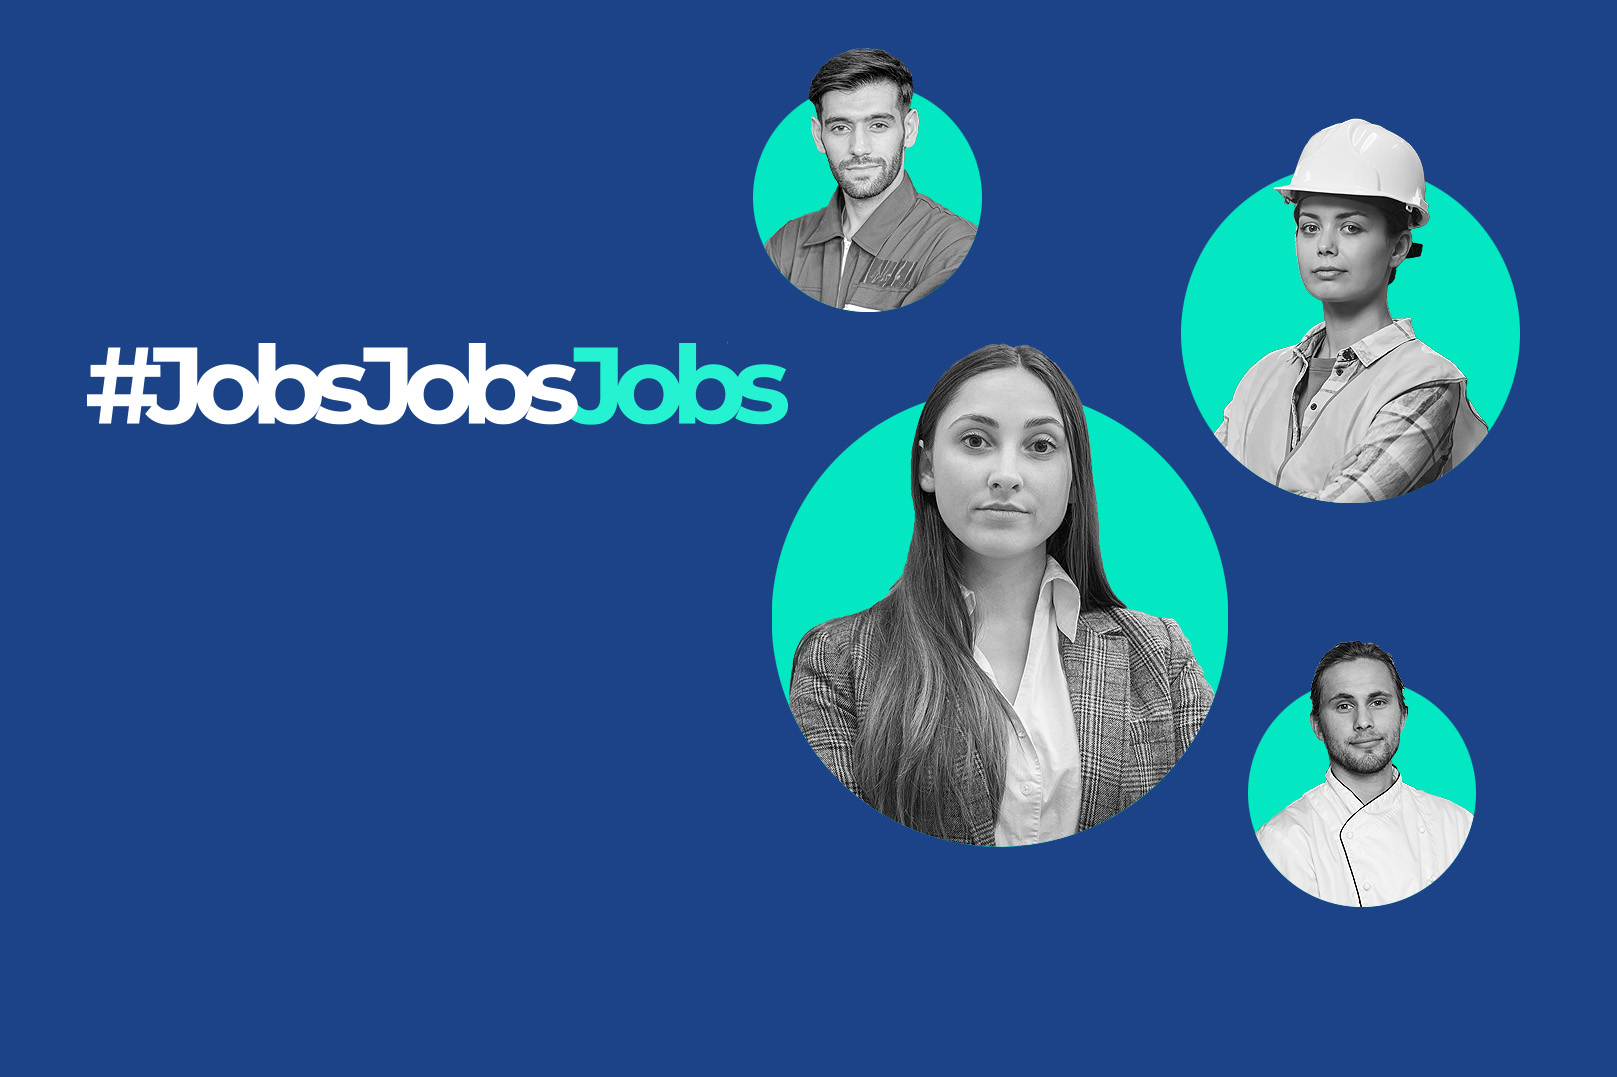 #JobsJobsJobs